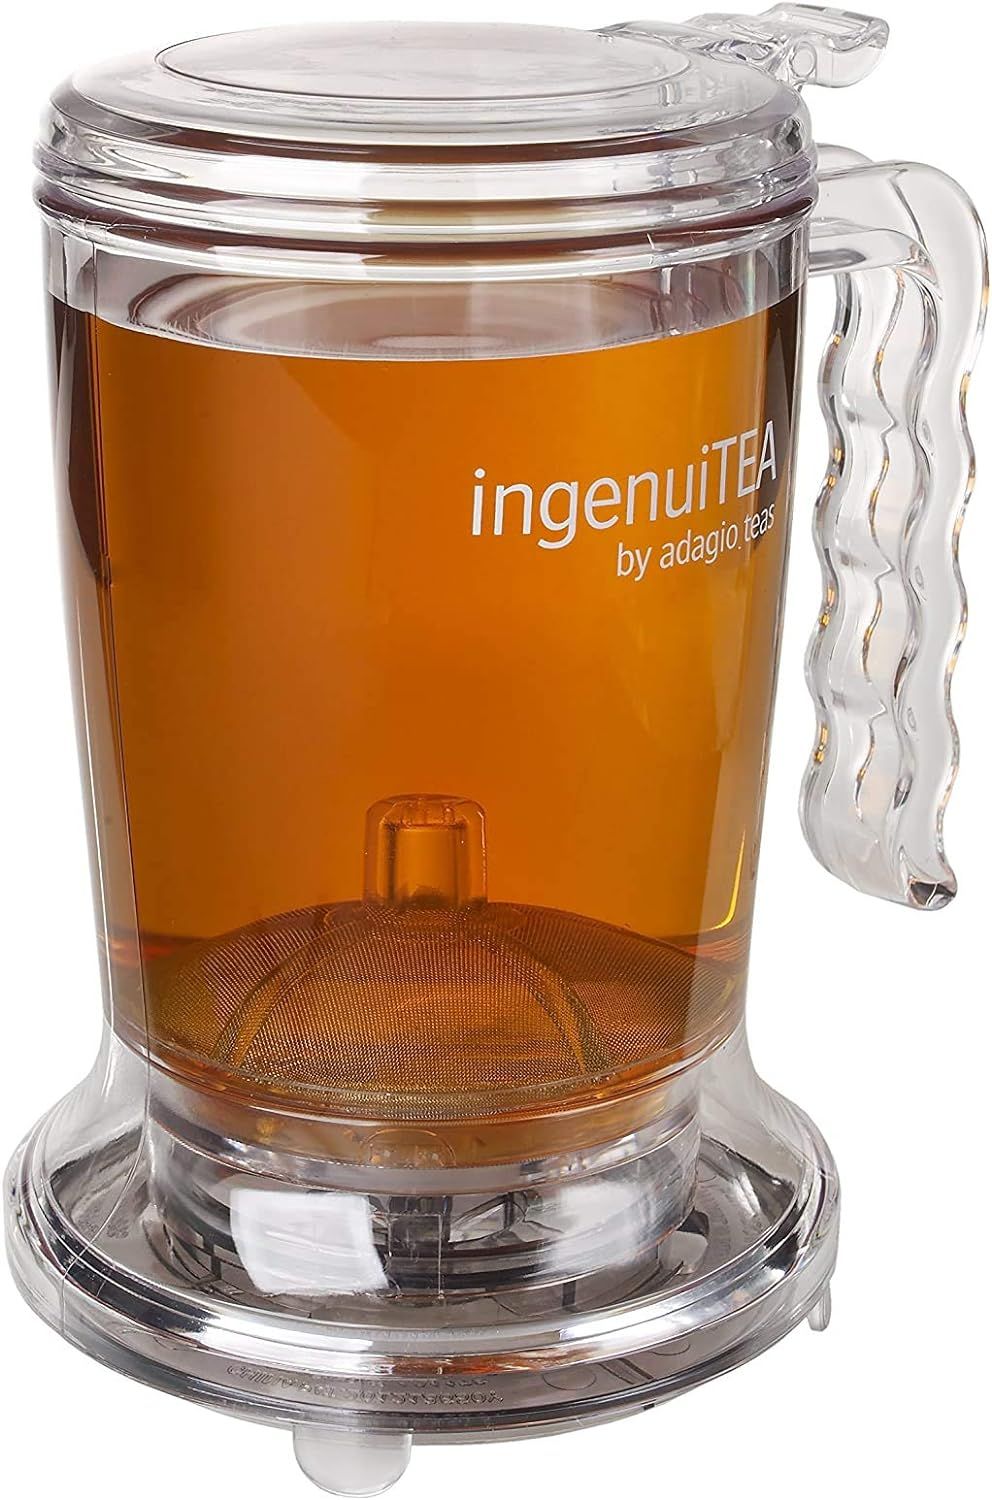 Adagio Teas ingenuiTEA Iced Tea Teapot,clear,28 oz | Amazon (US)